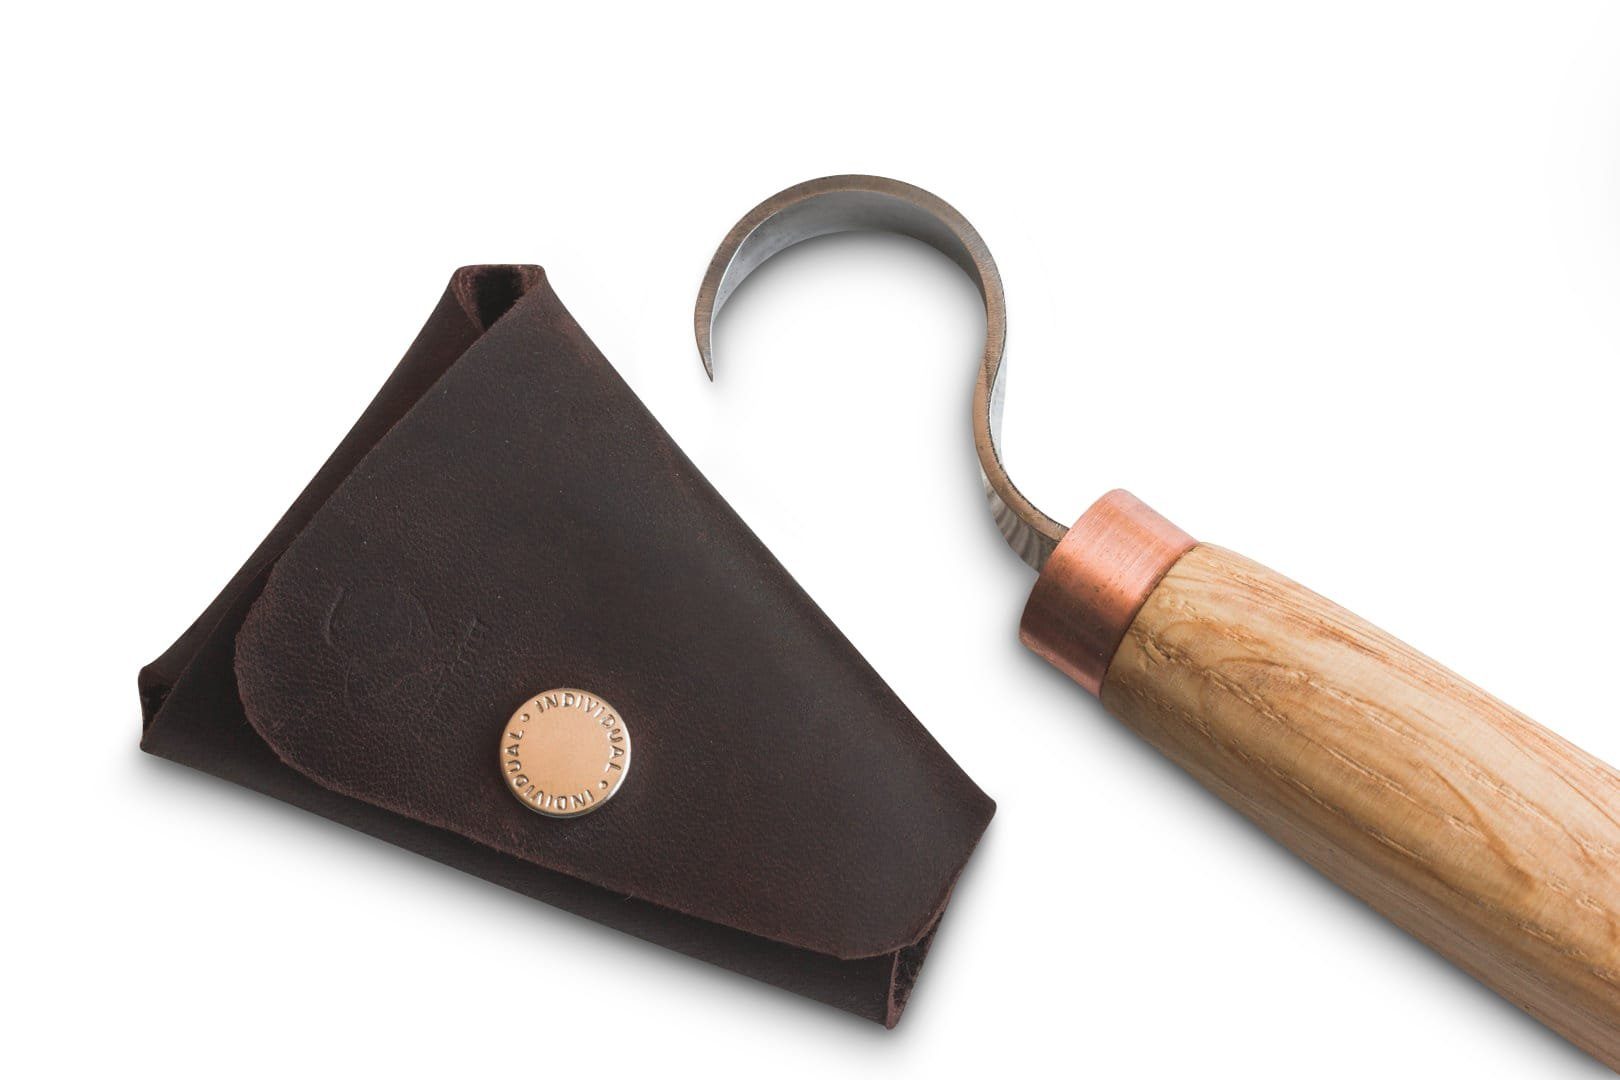 Modellierwerkzeug mit Tasche Beaver Löffelschnitzmesser Rechtshänder Werkkiste Die